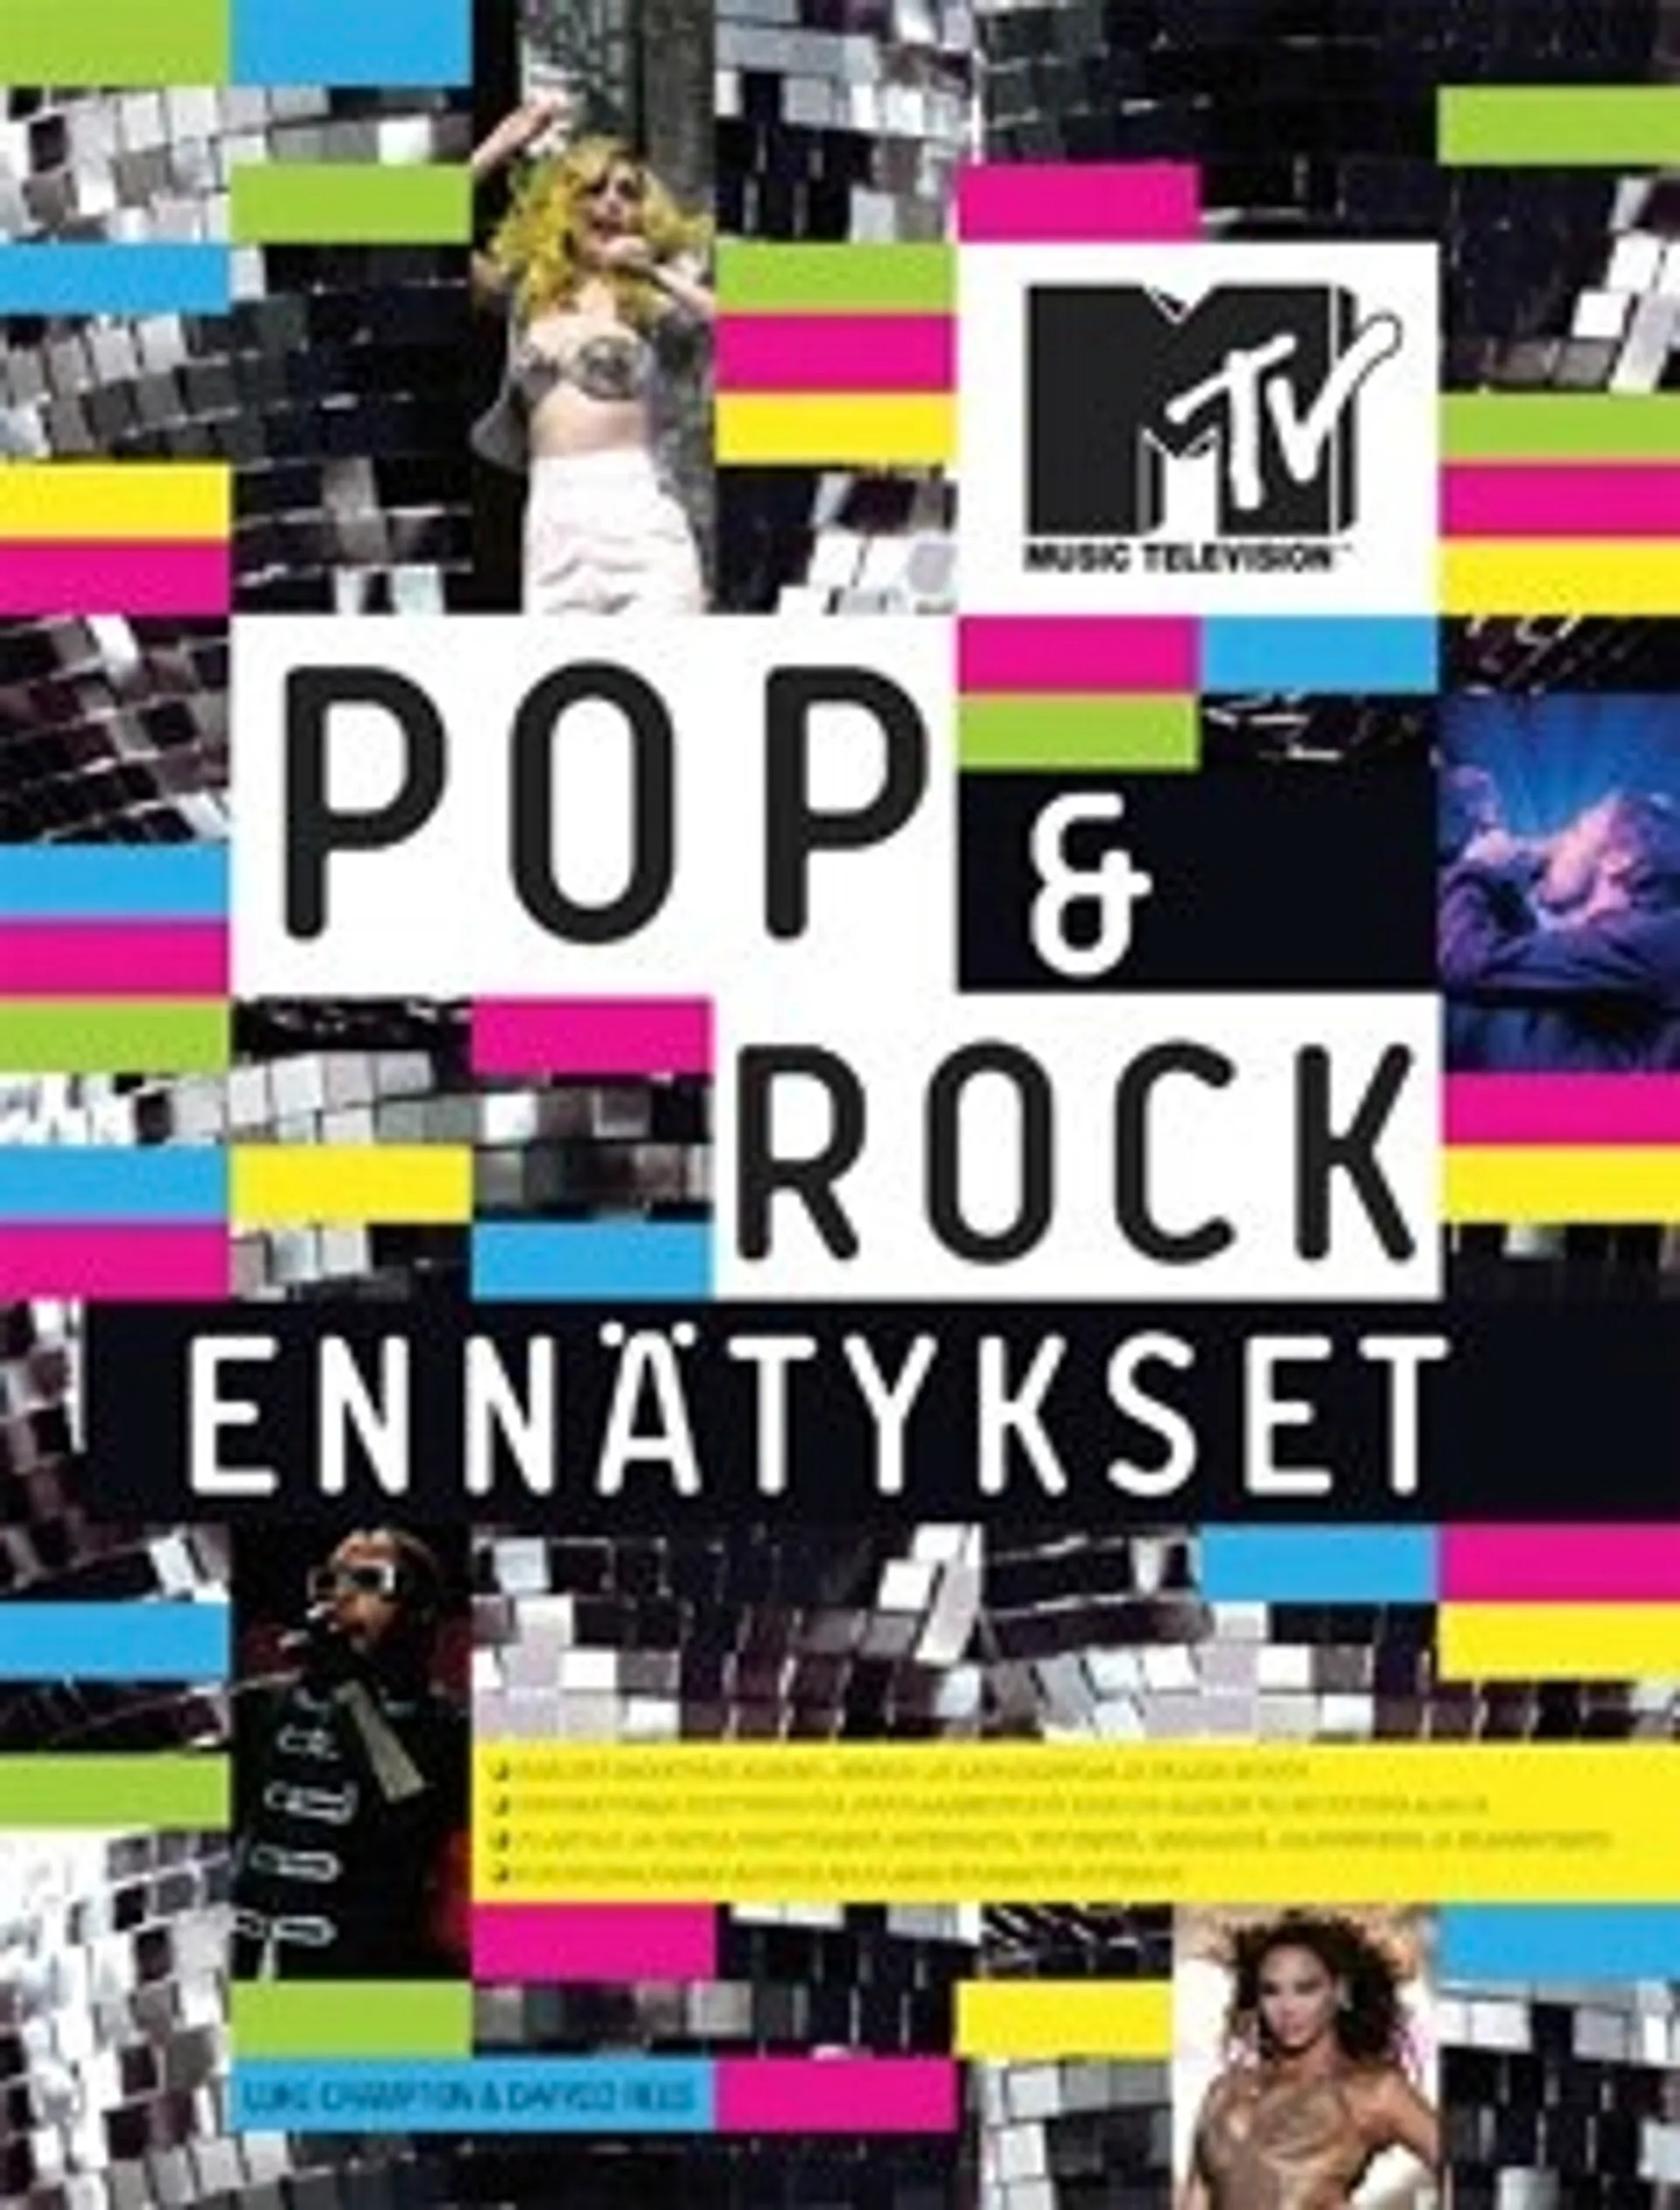 MTV - Pop & rock -ennätykset 2011